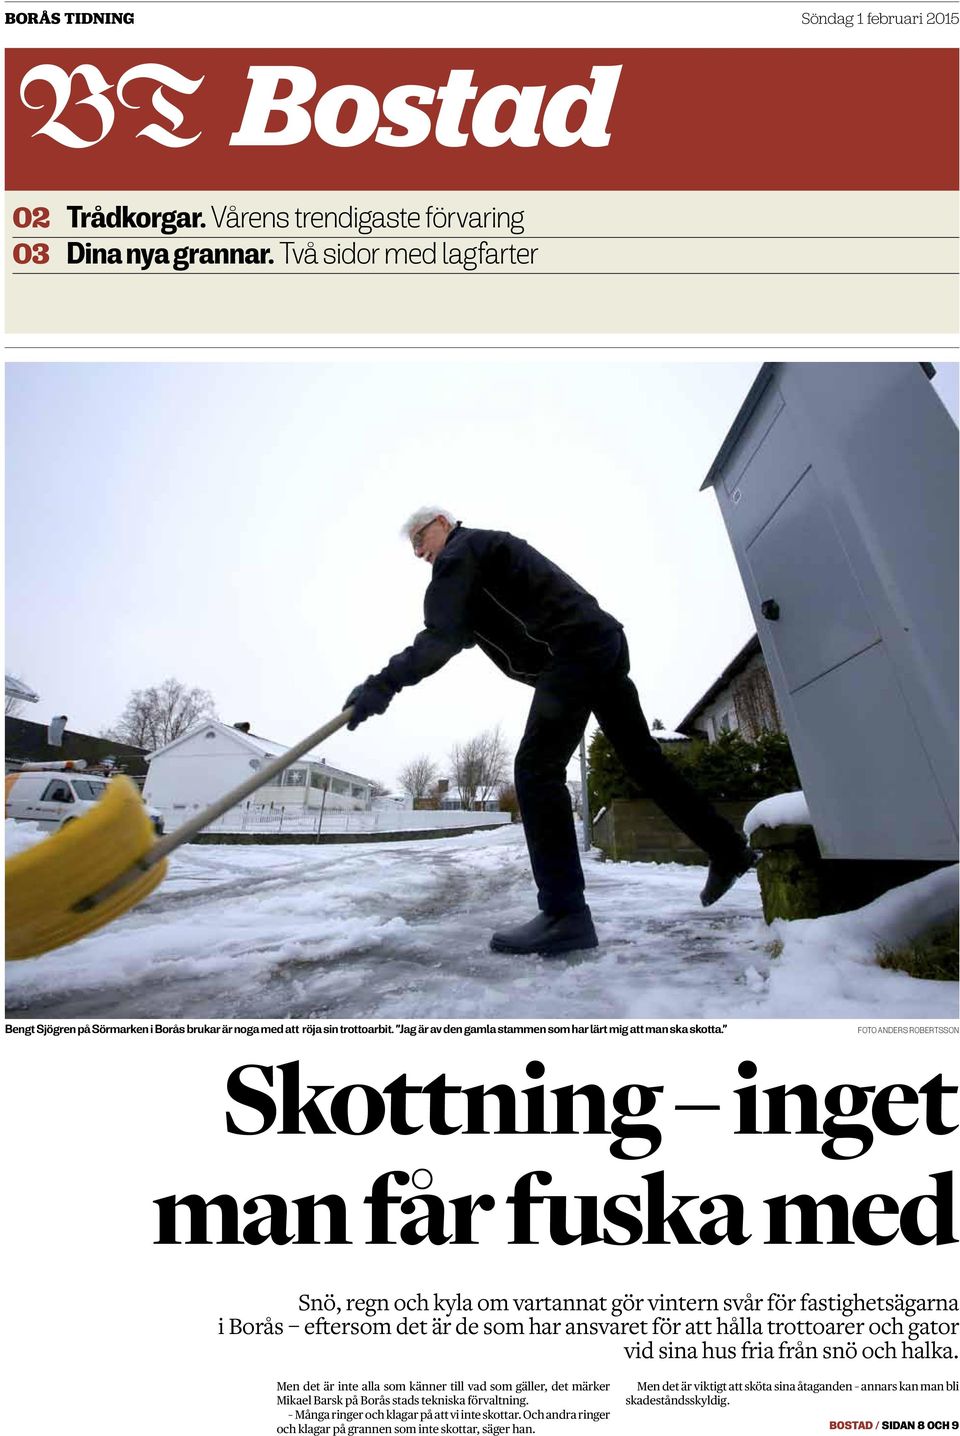 Foto anders robertsson Skottning inget man får fuska med Snö, regn och kyla om vartannat gör vintern svår för fastighetsägarna i Borås eftersom det är de som har ansvaret för att hålla trottoarer och